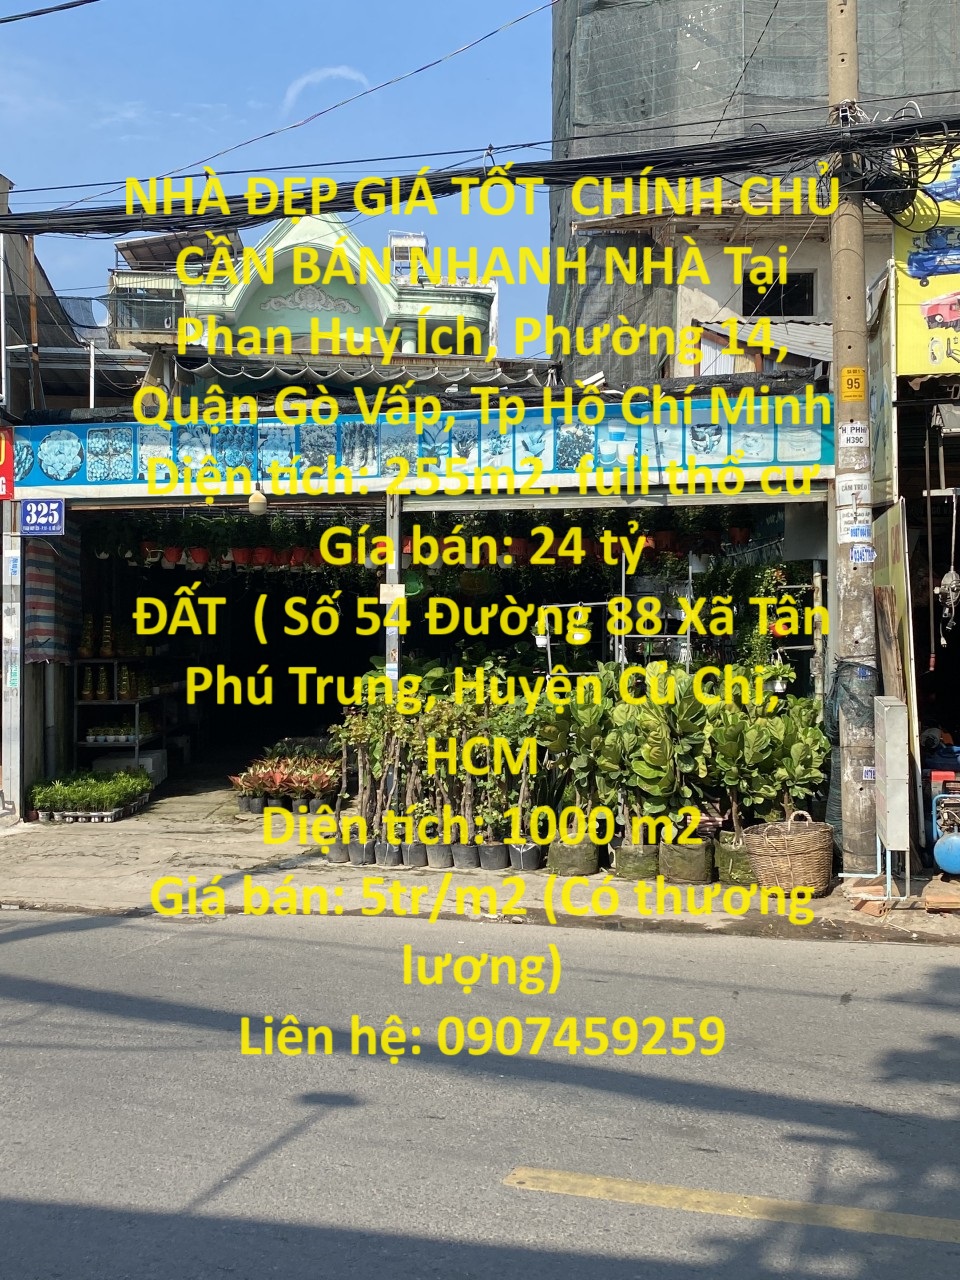 NHÀ ĐẸP GIÁ TỐT  CHÍNH CHỦ CẦN BÁN NHANH NHÀ Tại Phan Huy Ích, Phường 14, Quận Gò Vấp - Ảnh chính